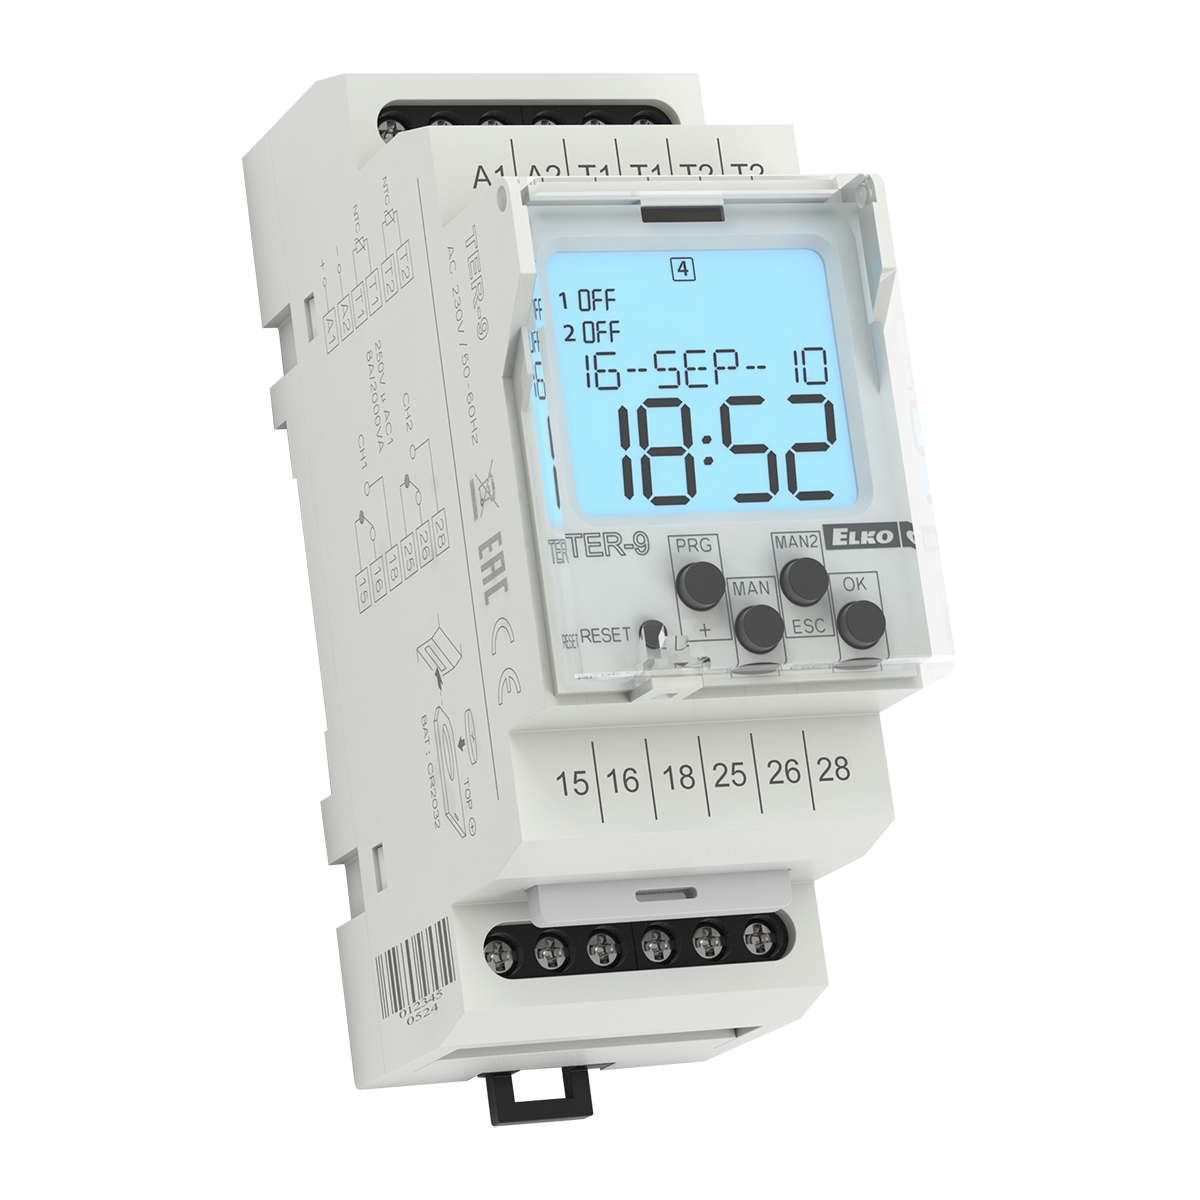 Temperaturregler digital LCD Dual Thermostatregler 230V